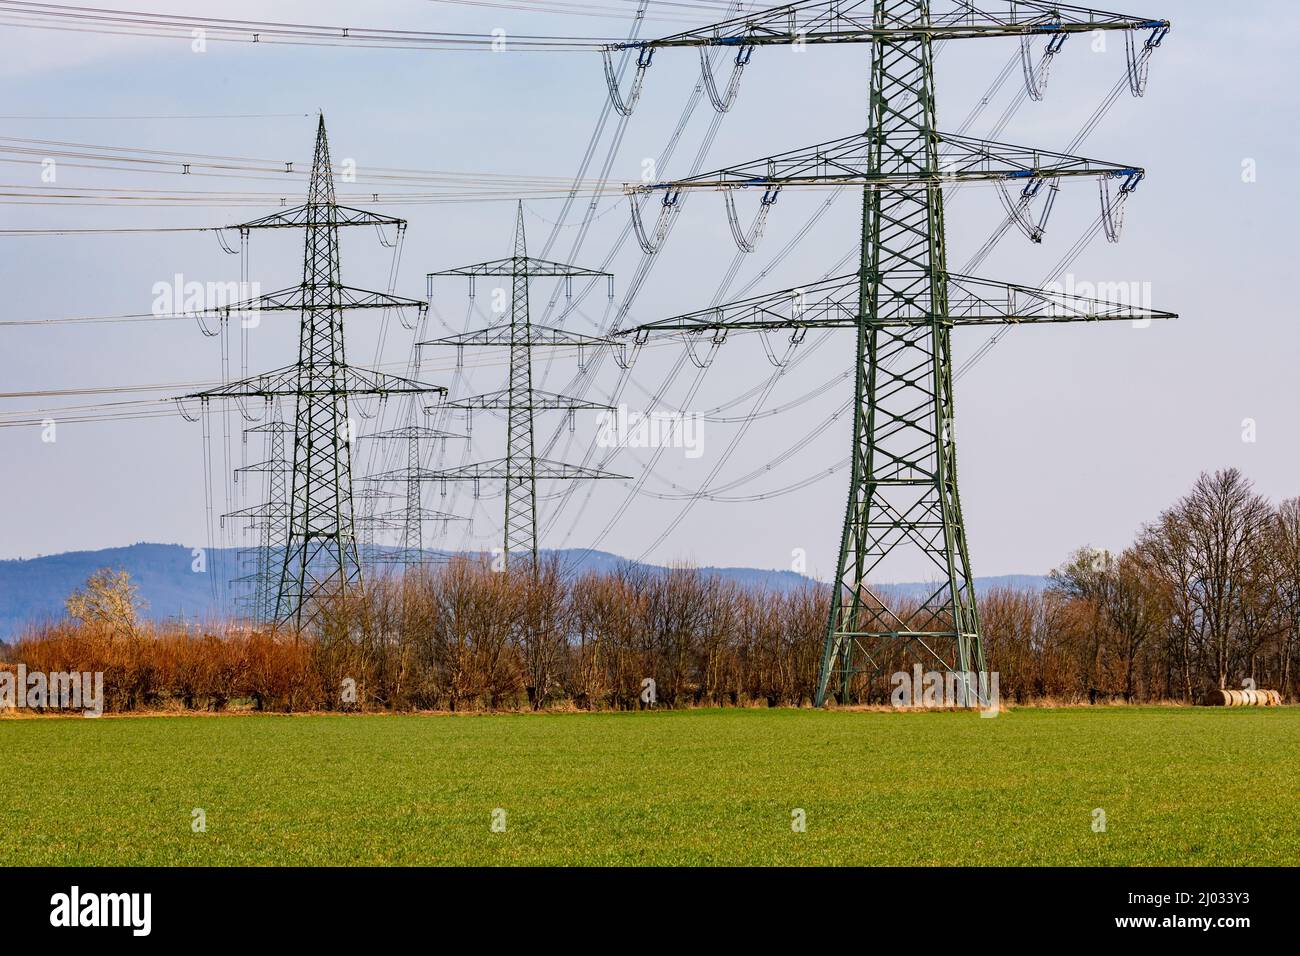 Varias torres de transmisión con líneas eléctricas para transportar electricidad para lograr la Energiewende alemana Foto de stock